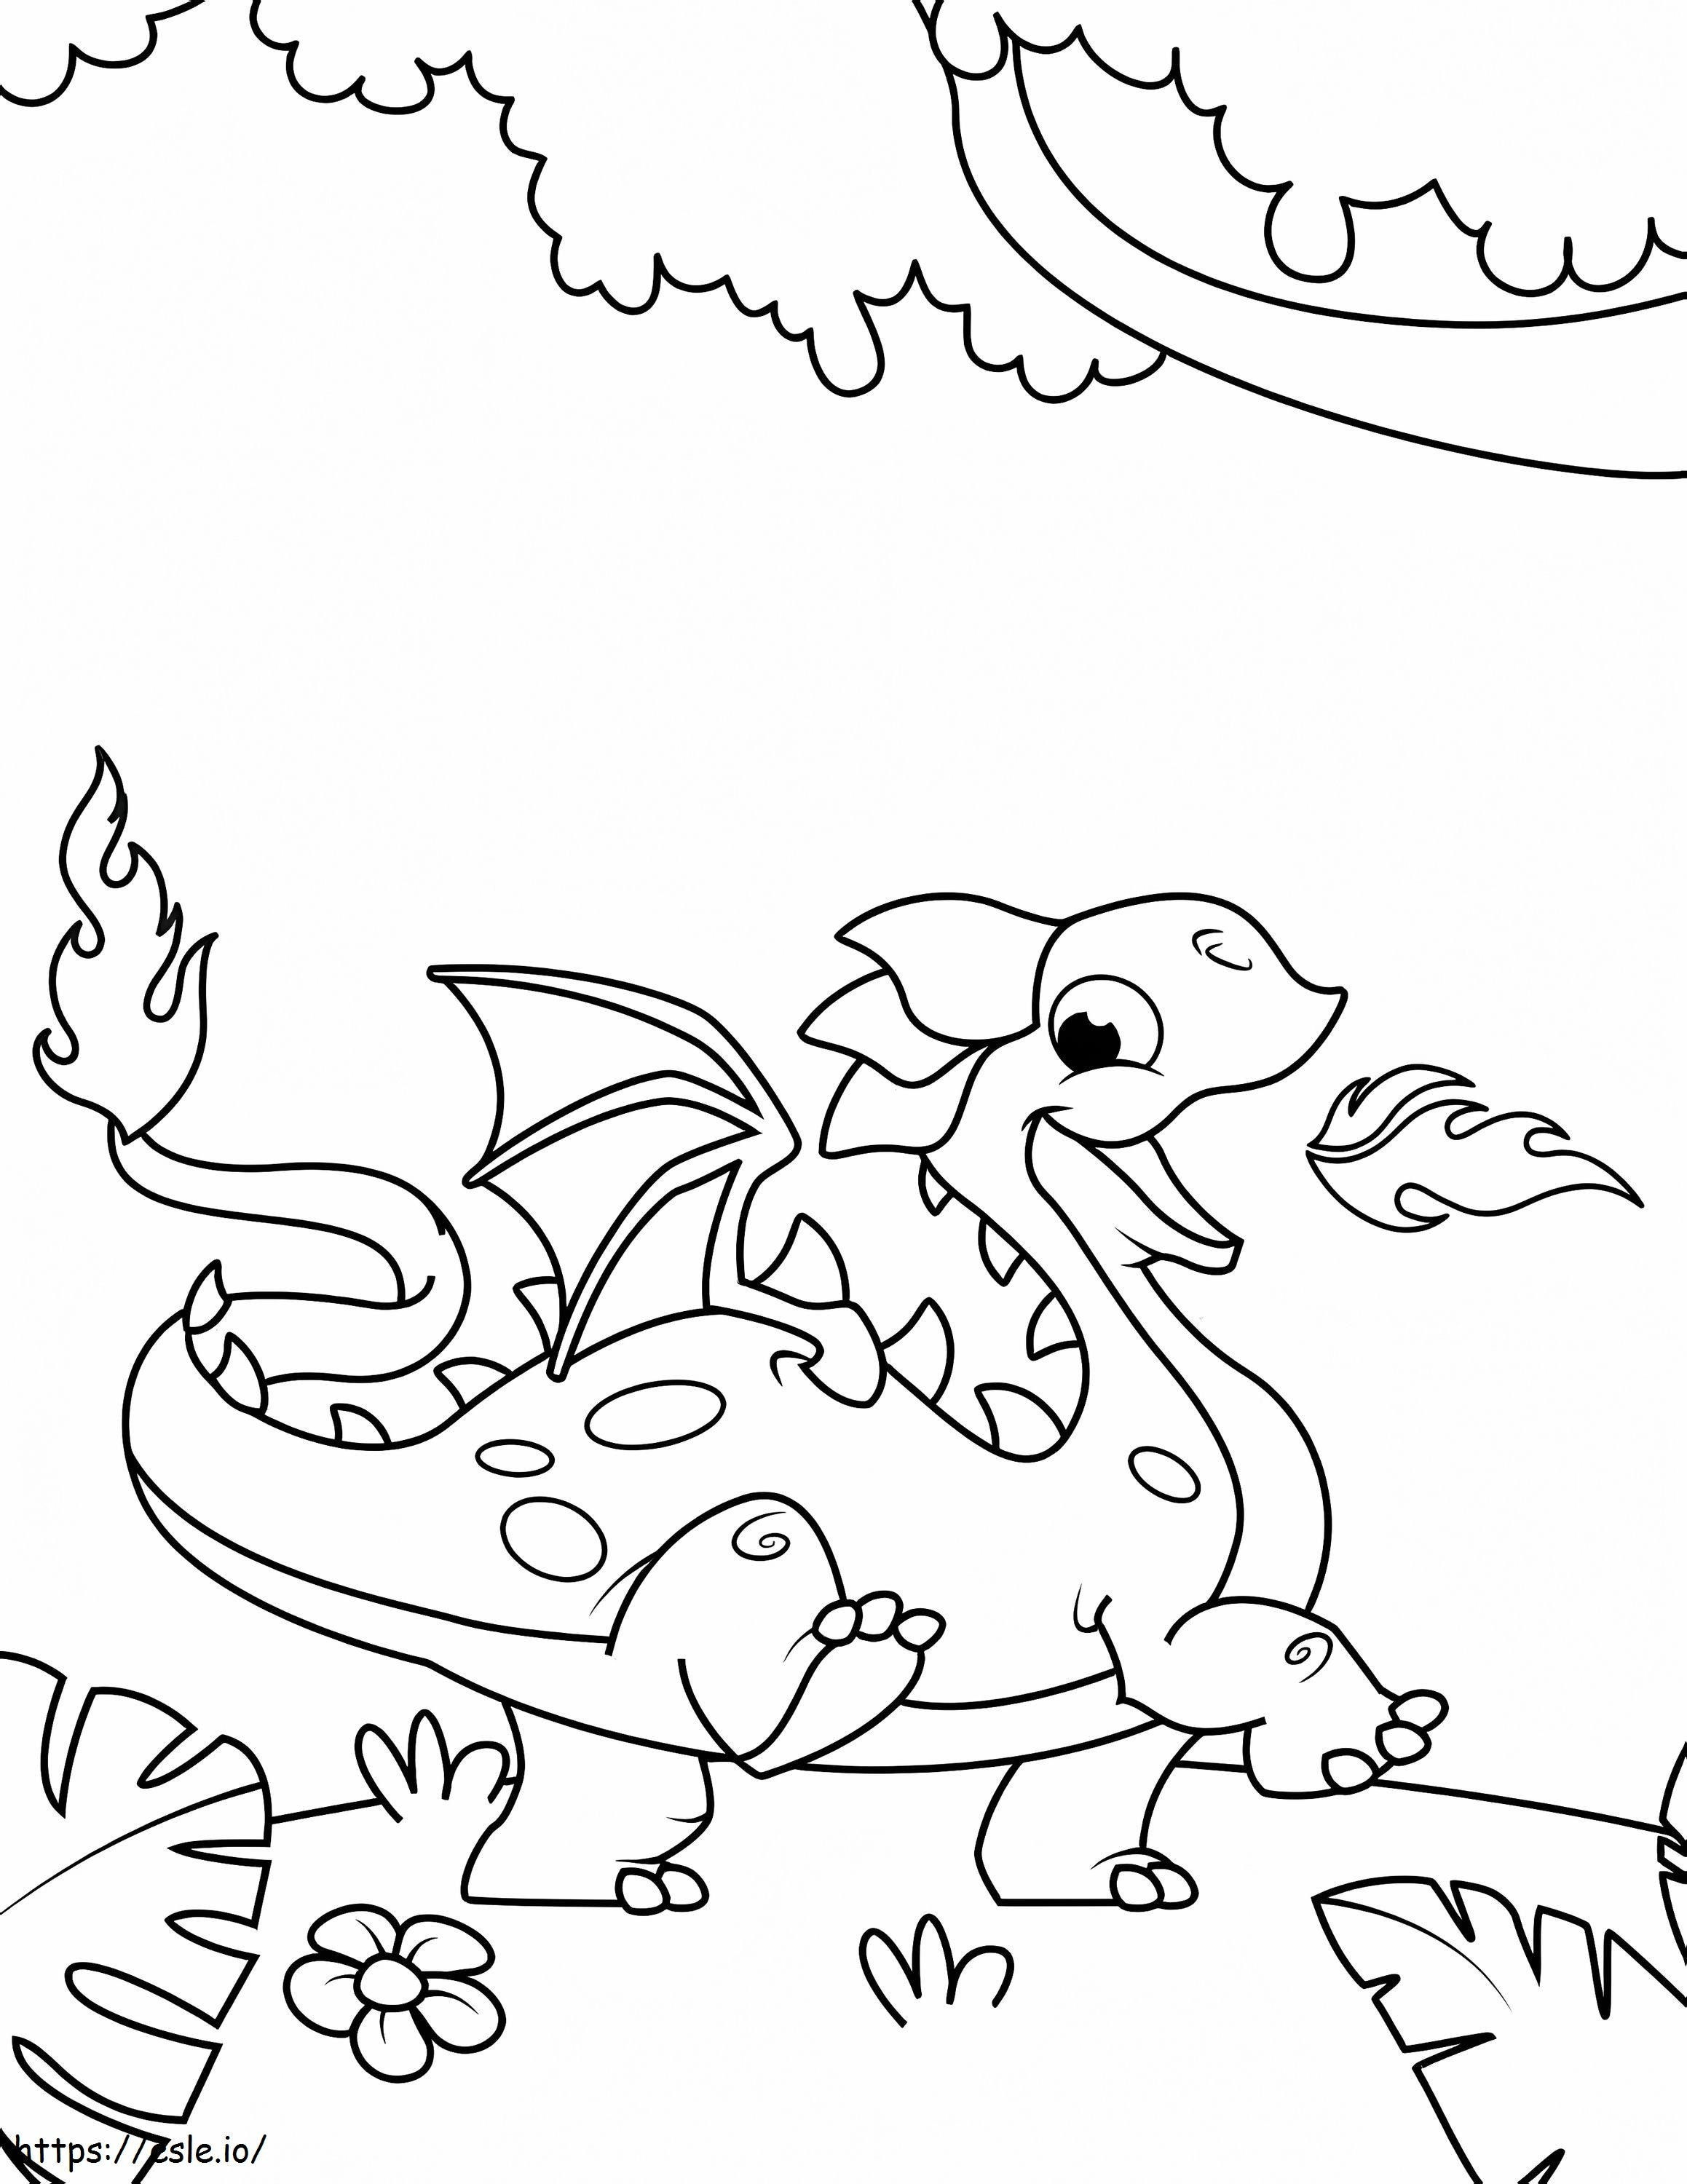 Dragon Mignon coloring page